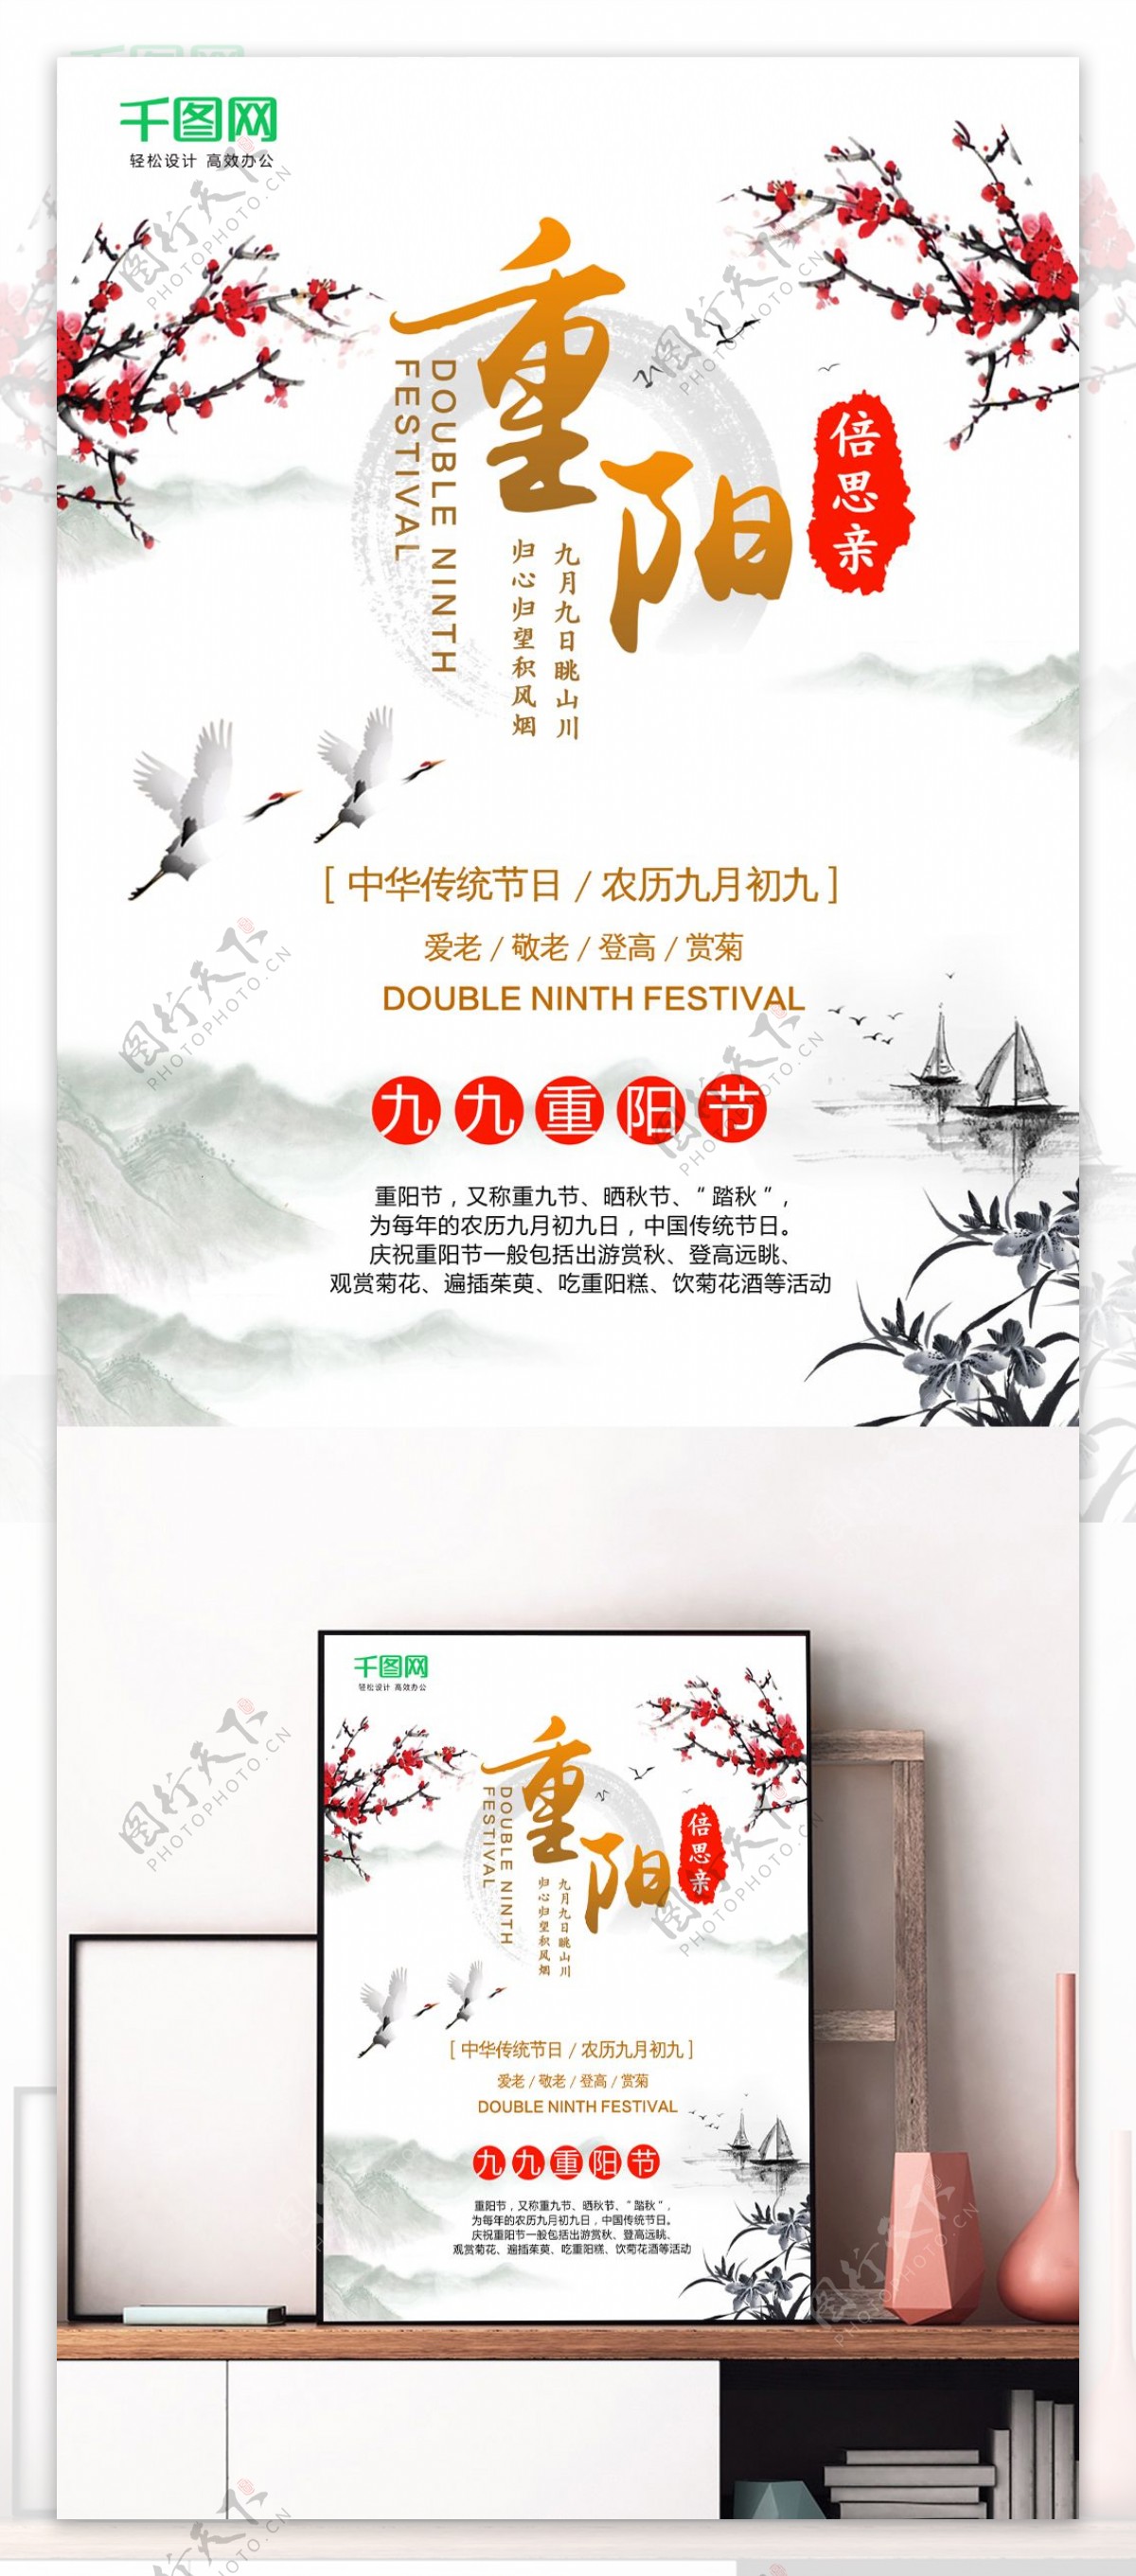 中国风传统节日重阳节商场宣传海报